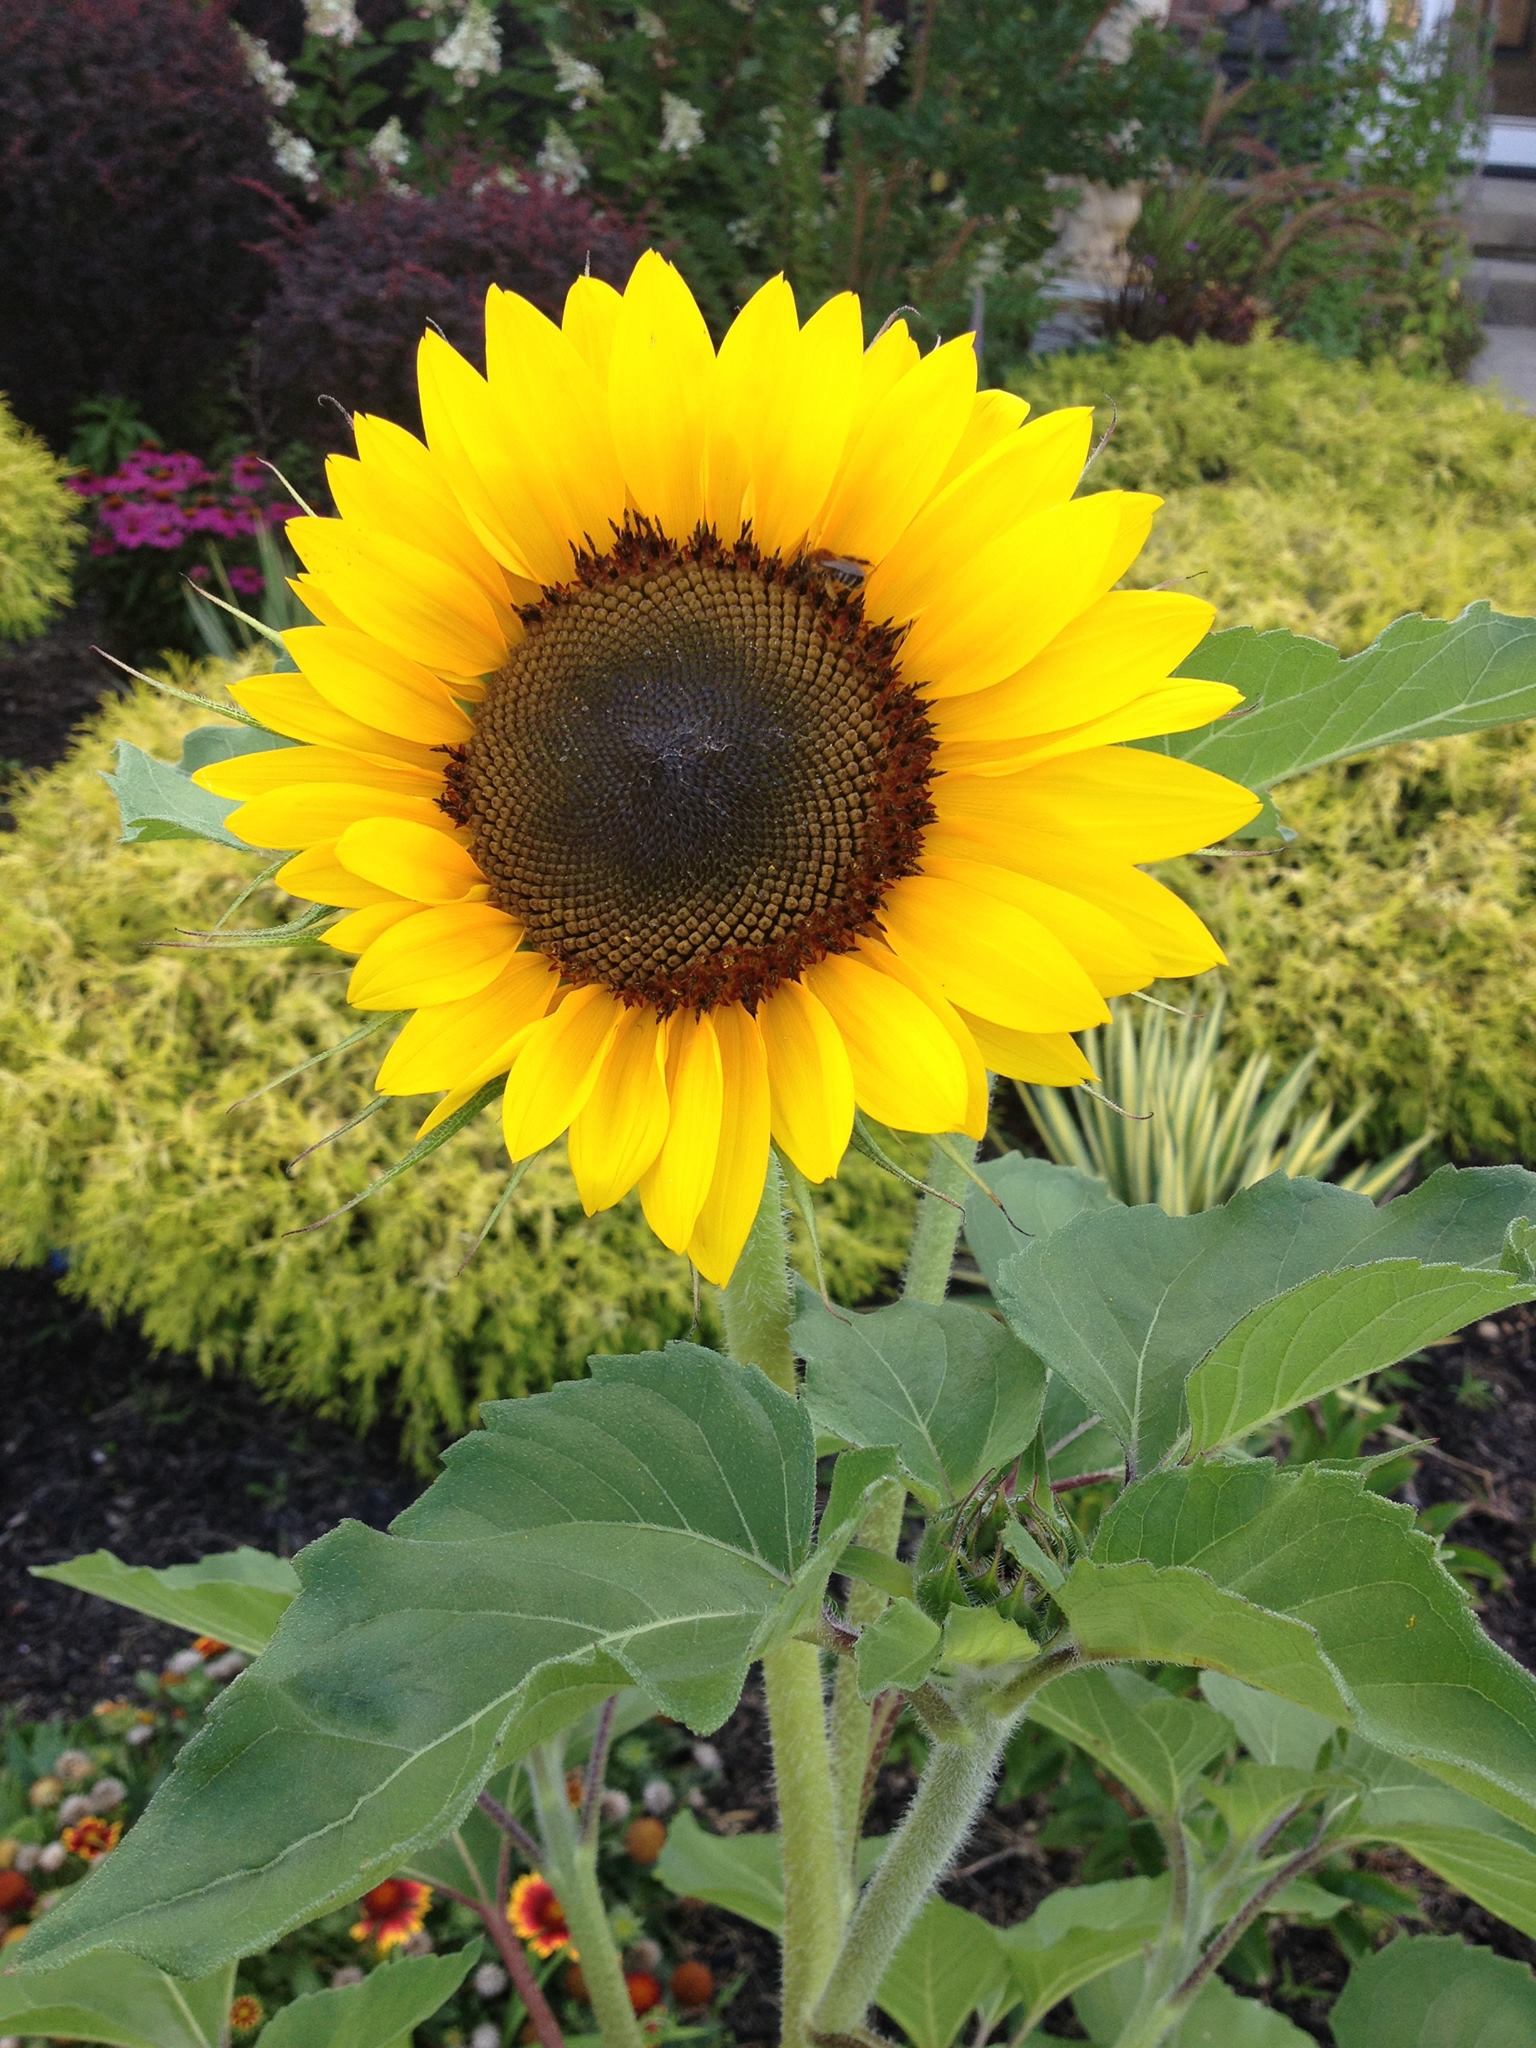 First sunflower